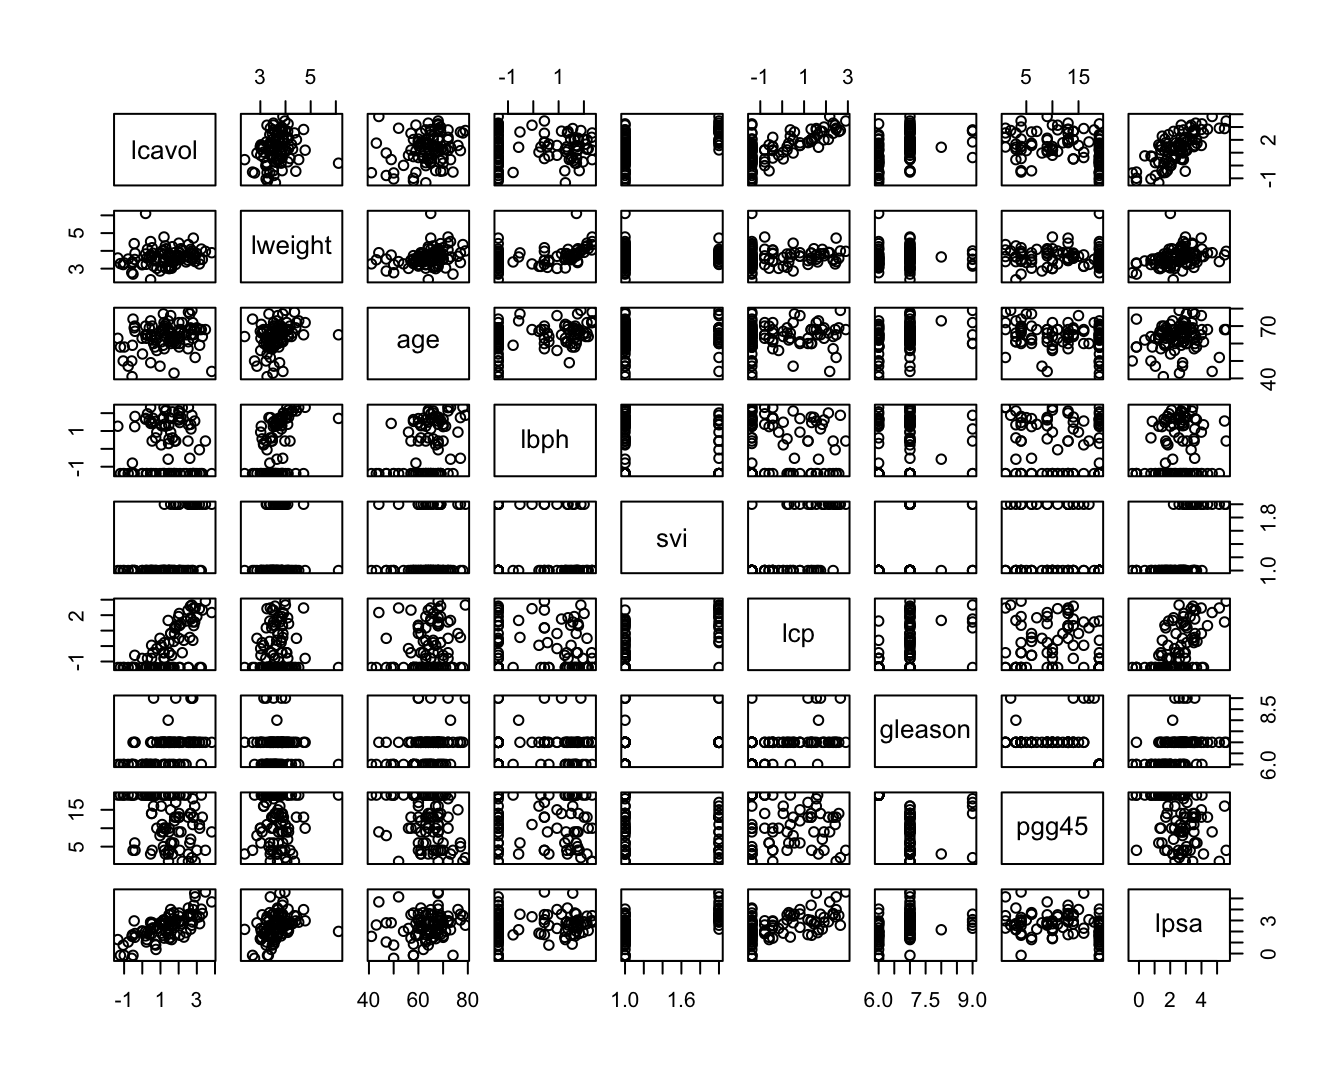 Scatterplot matrix voor de observaties in de prostaat kanker dataset.